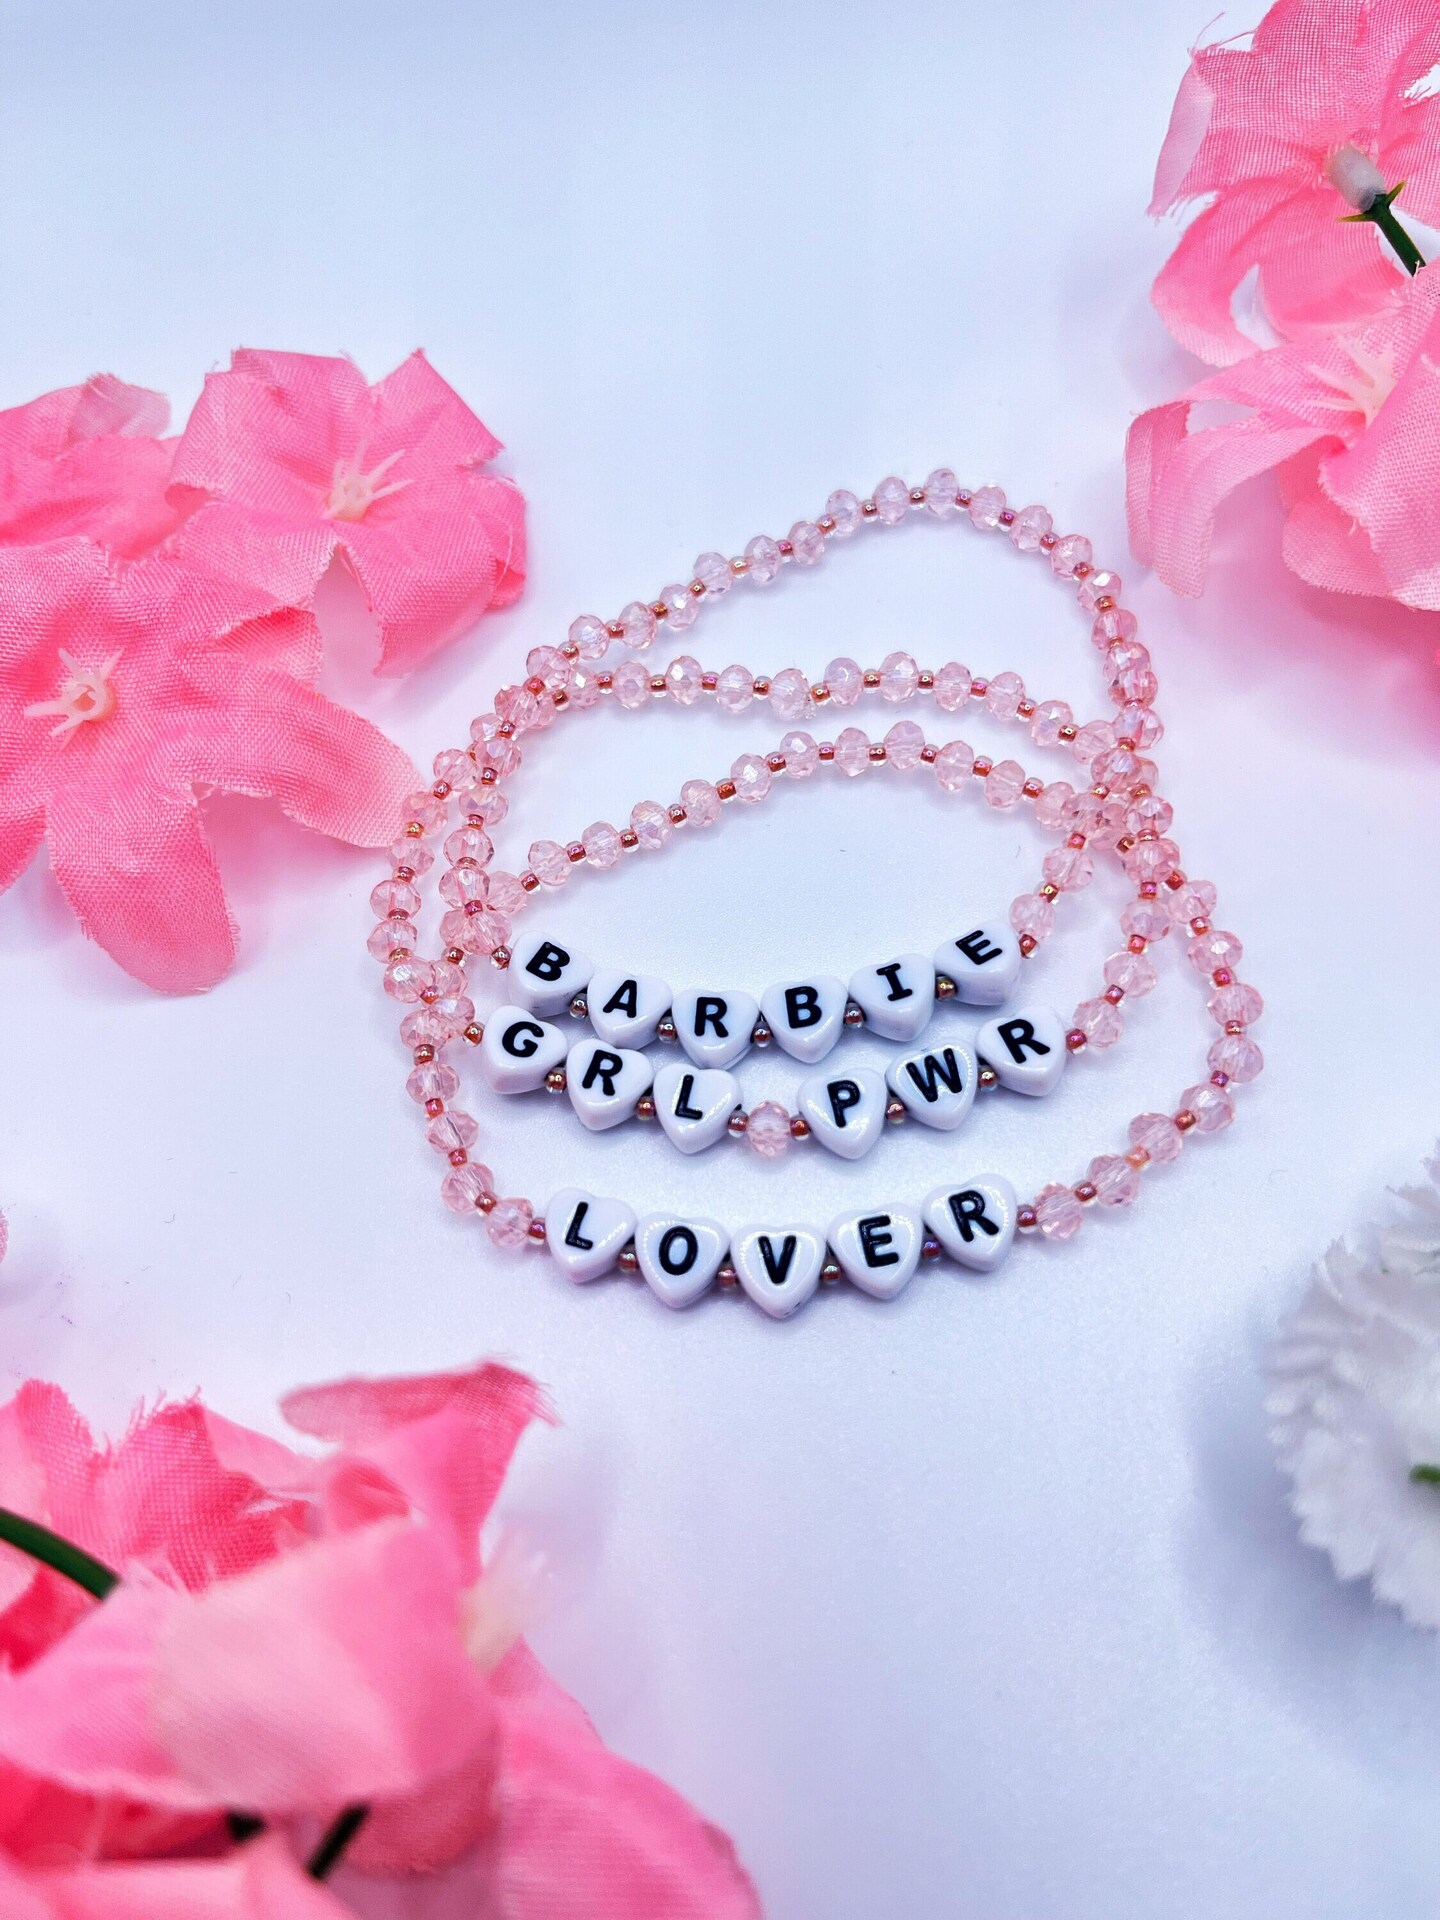 Shiny Polyhedron Beads Bracelet Cuff Jewelry for Women